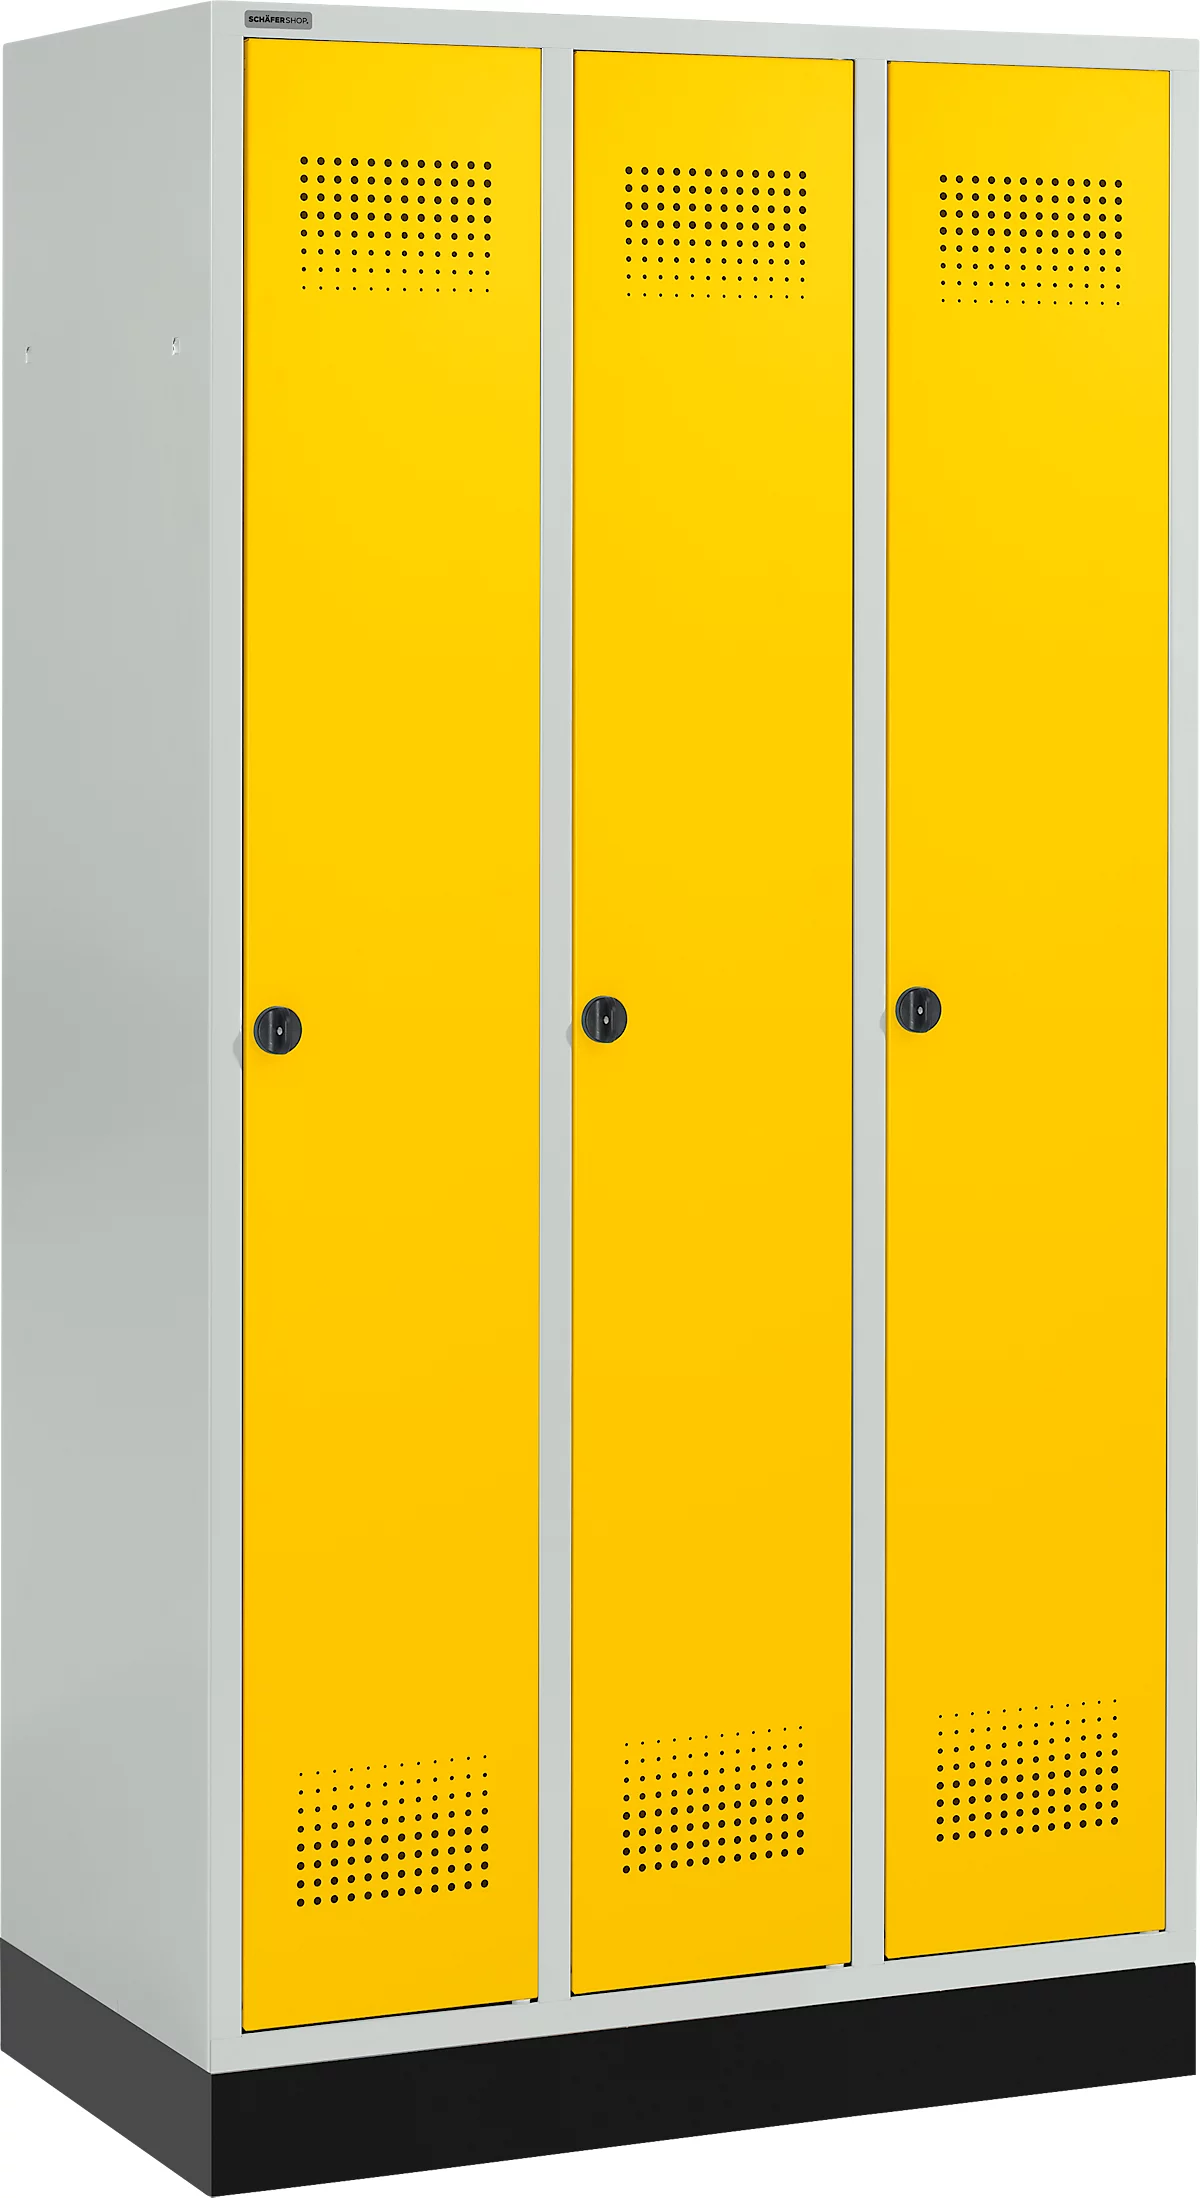 Schäfer Shop Genius Taquilla con zócalo, 3 compartimentos, cierre de pasador giratorio de seguridad, gris luminoso/amarillo